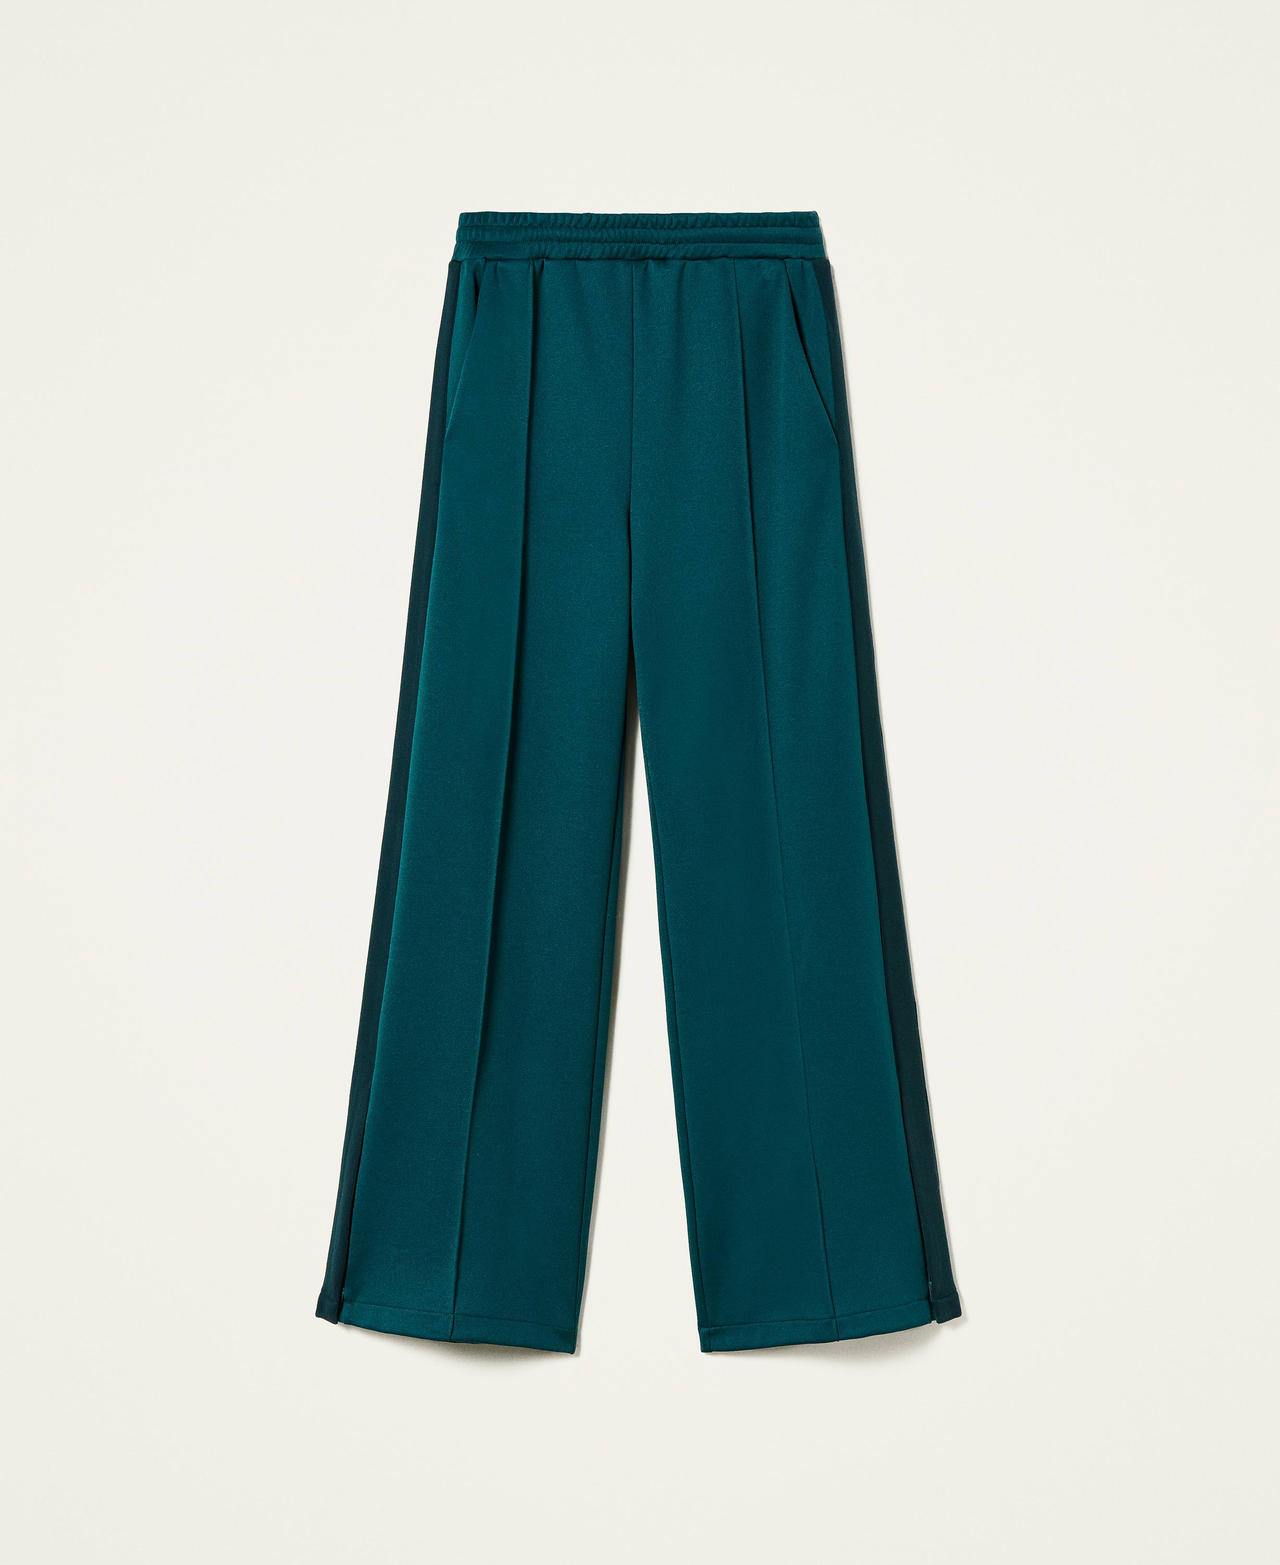 Pantaloni a palazzo con bande Bicolor Verde Scuro / Pitone Donna 212TT2361-0S